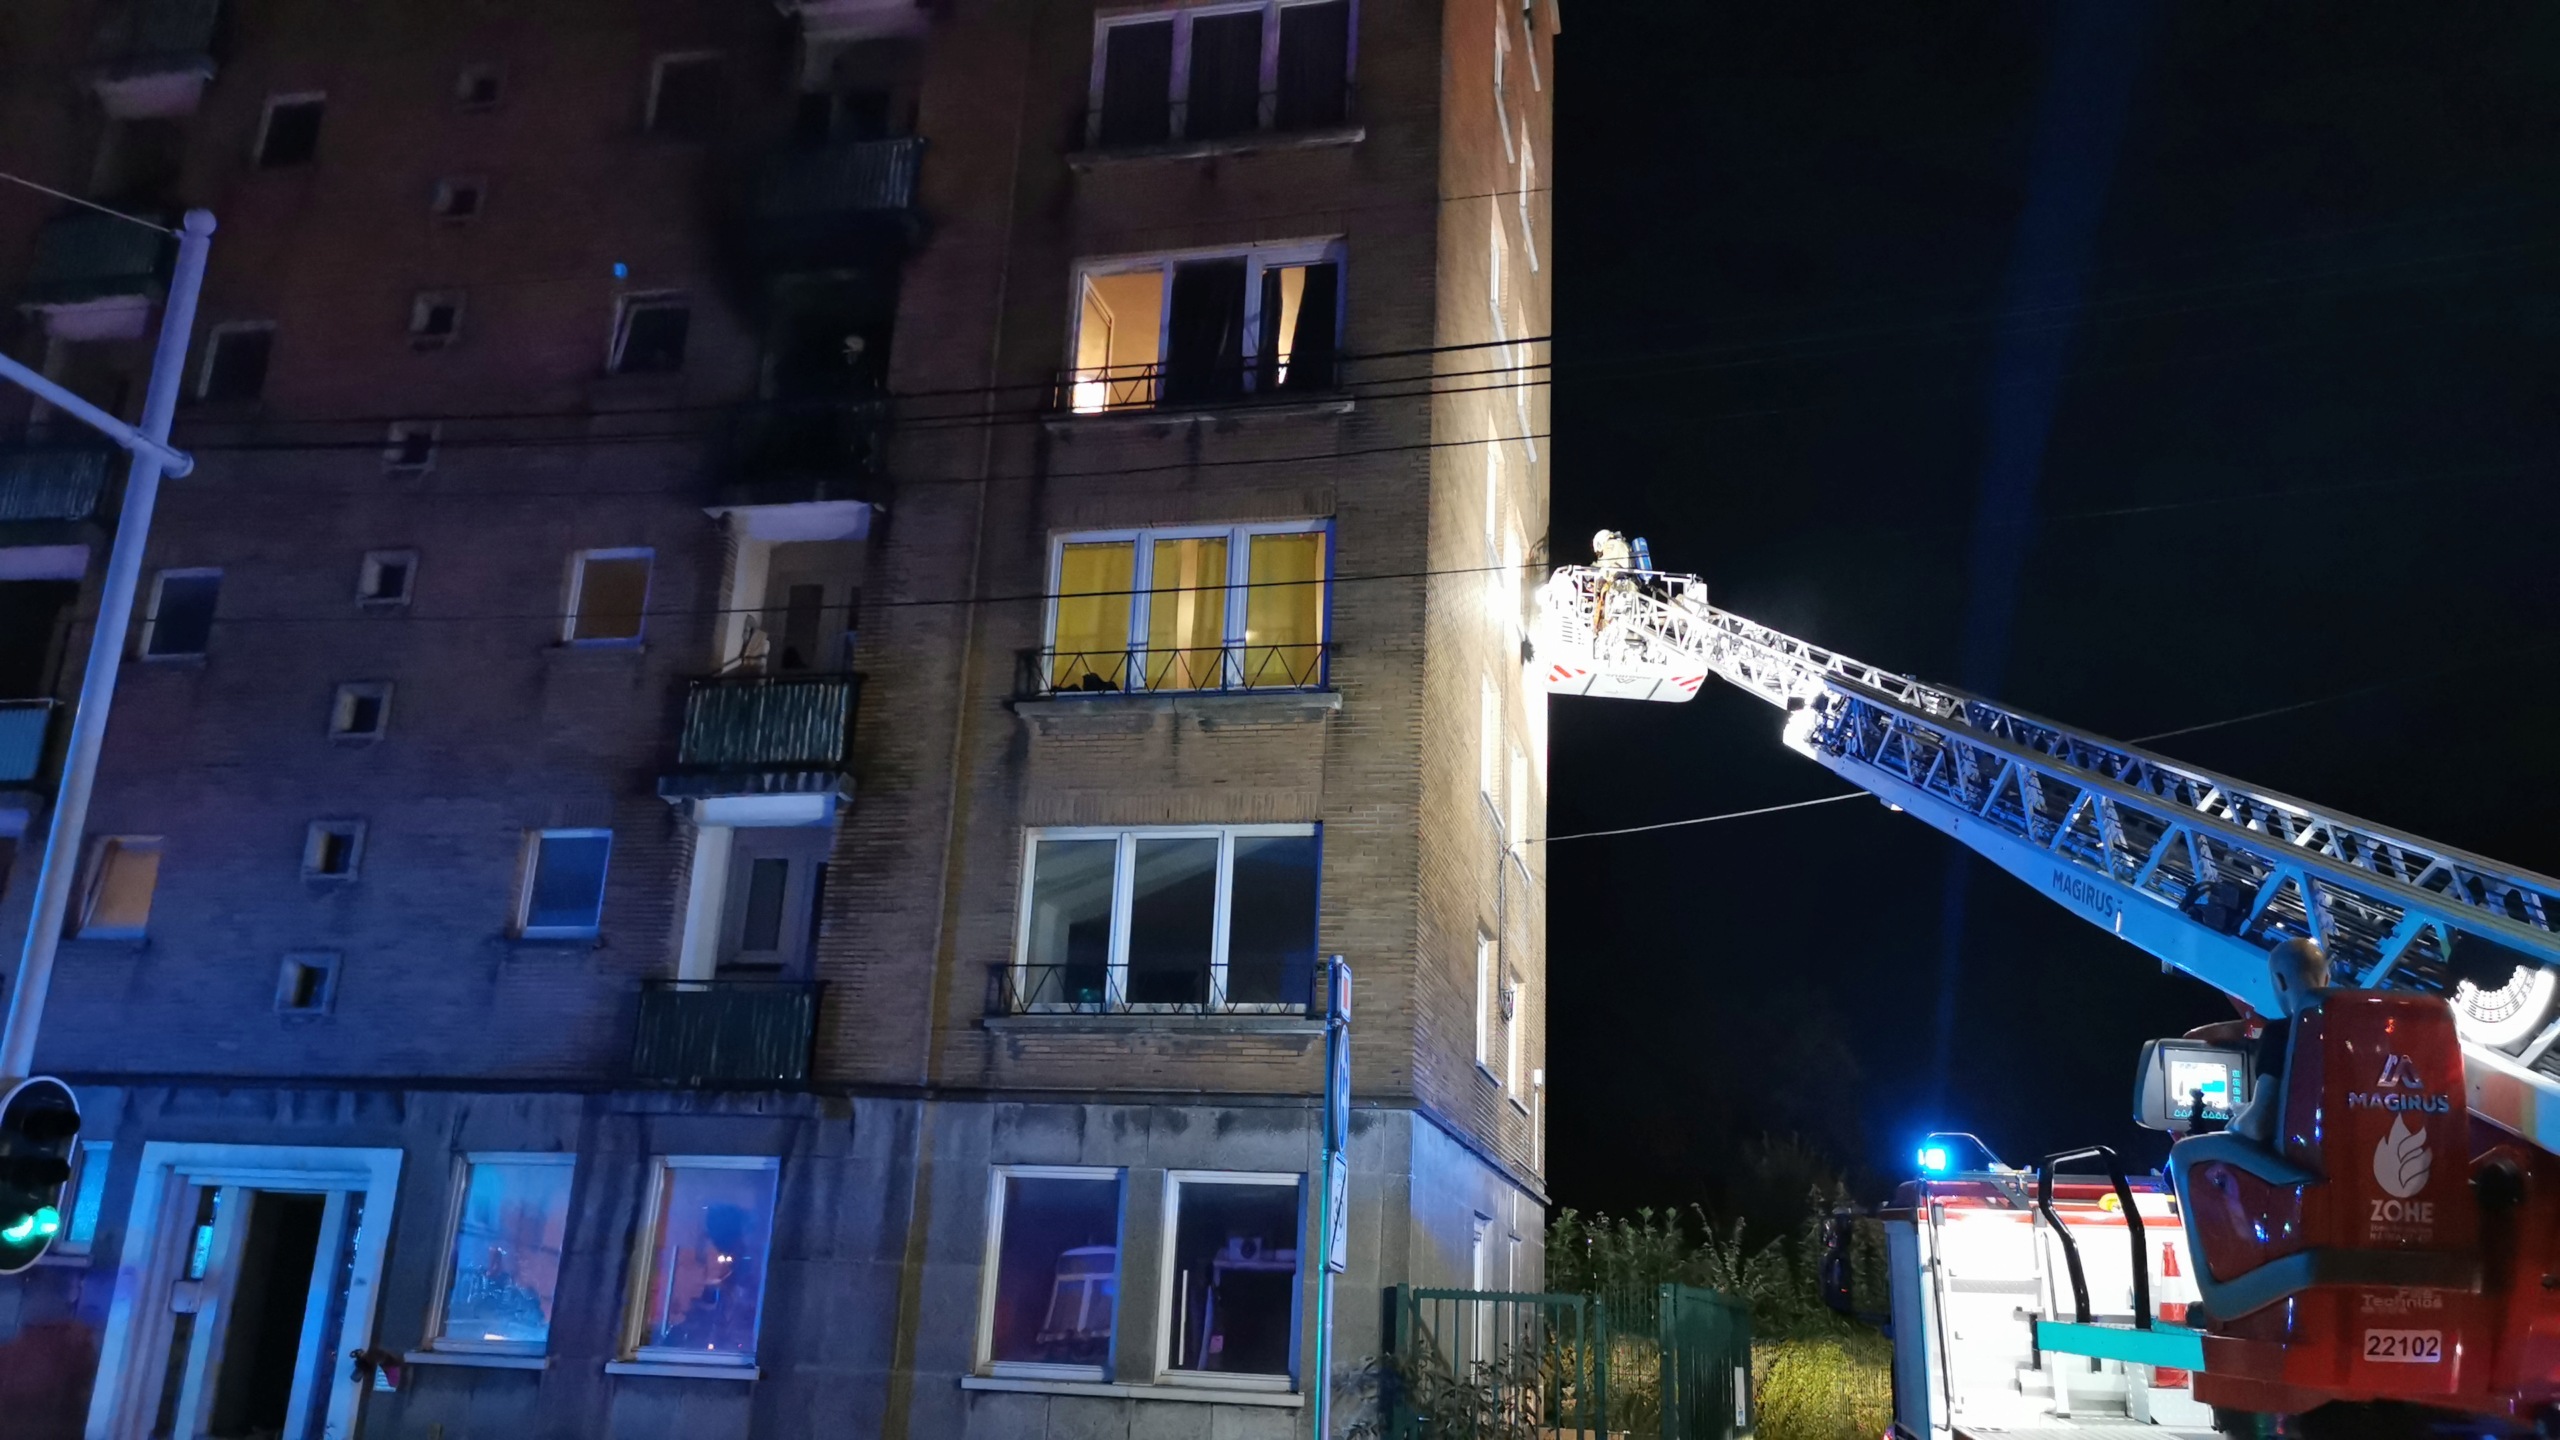 Incendie au 3e étage d'un building de Marchienne (7-09-2021 + photos) Img_2554